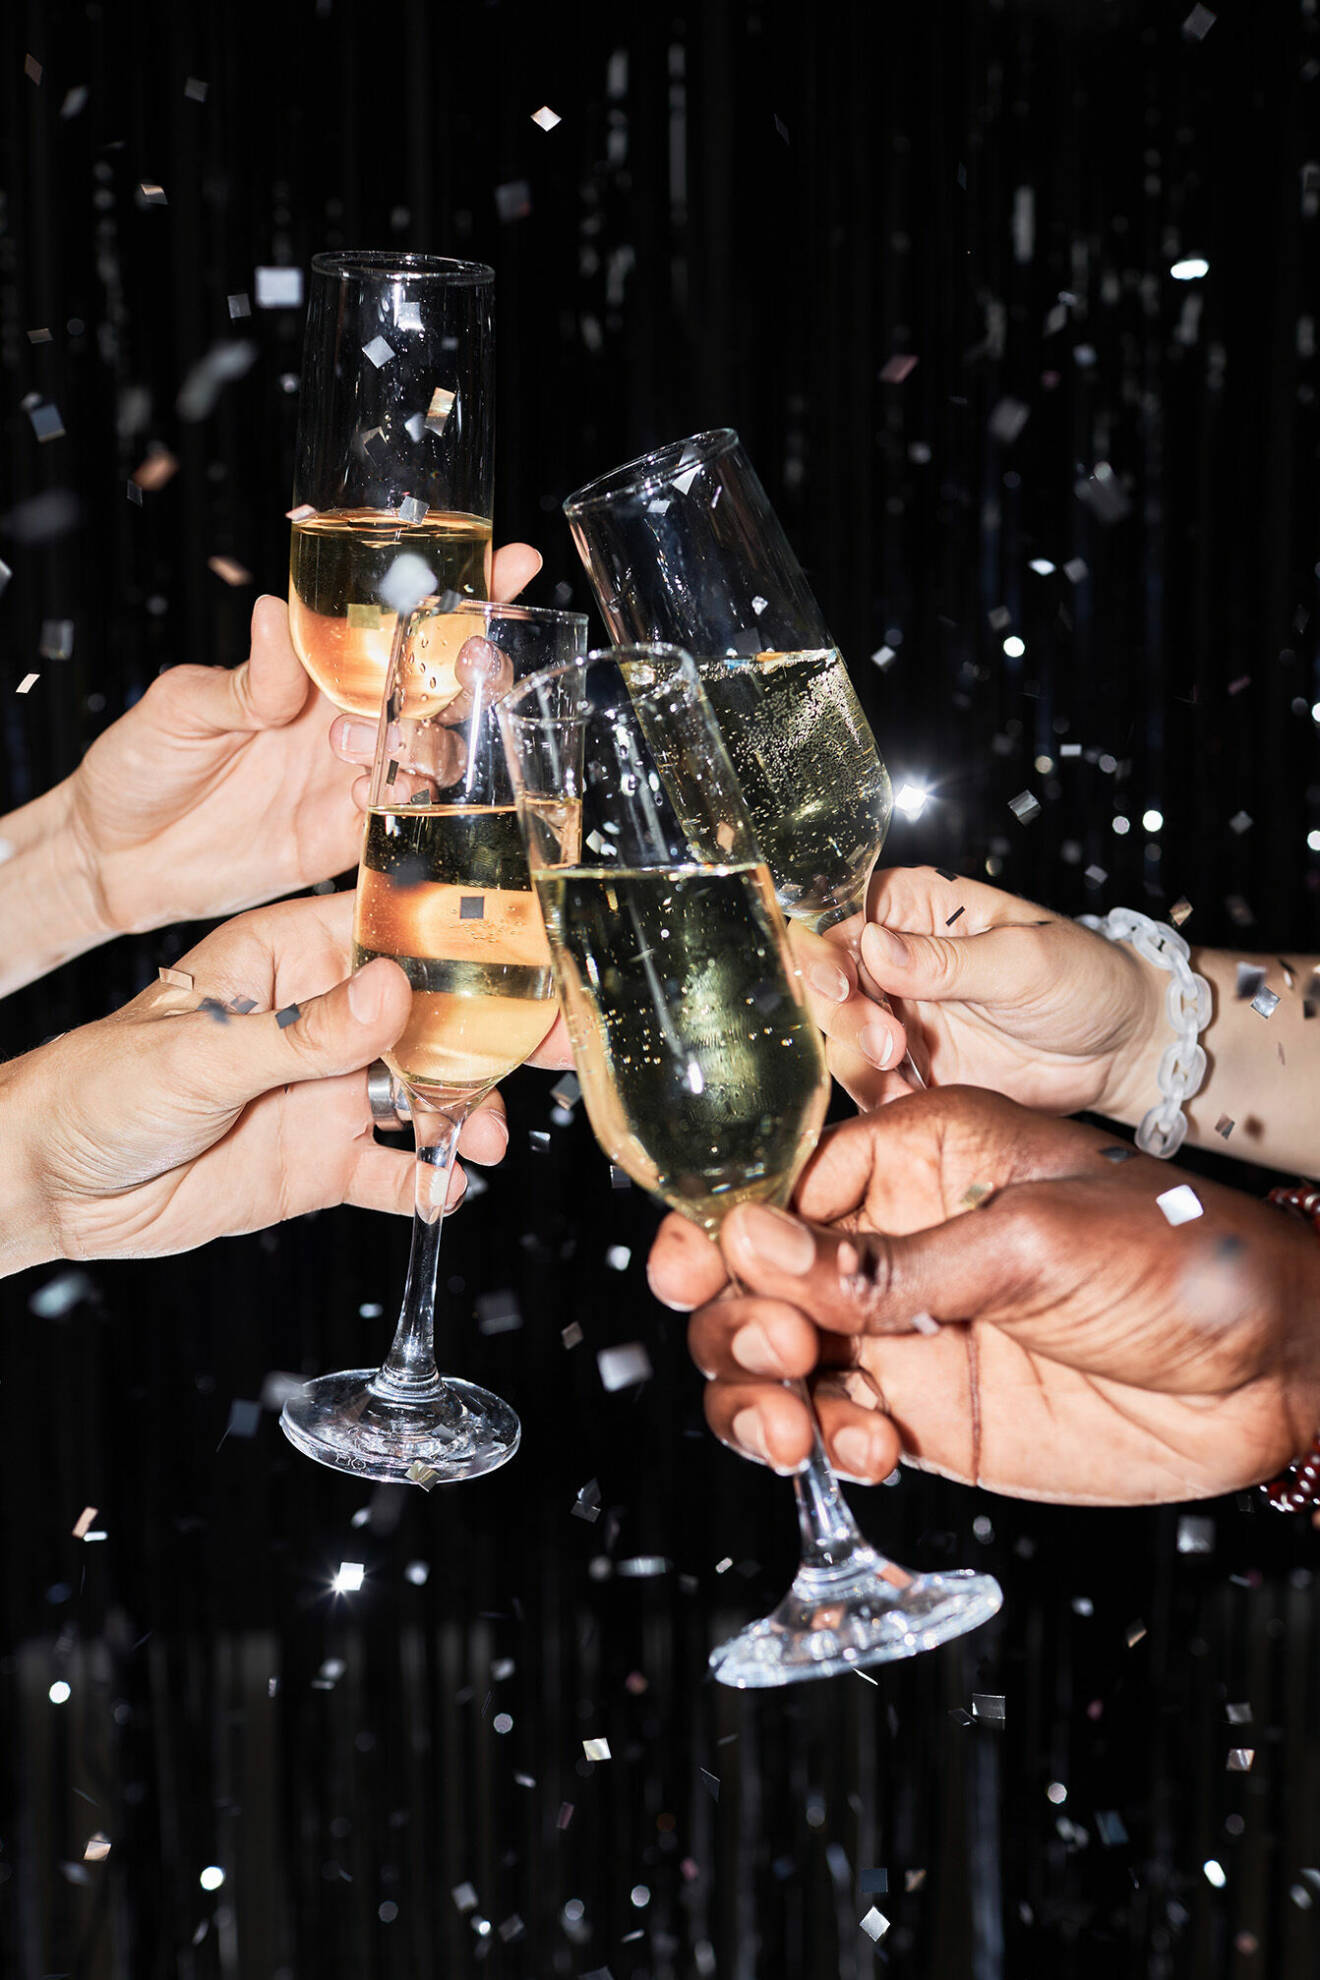 Billigare bubblor kommer bli ännu mer populärt nu när champagnen fortsätter stiga i pris.